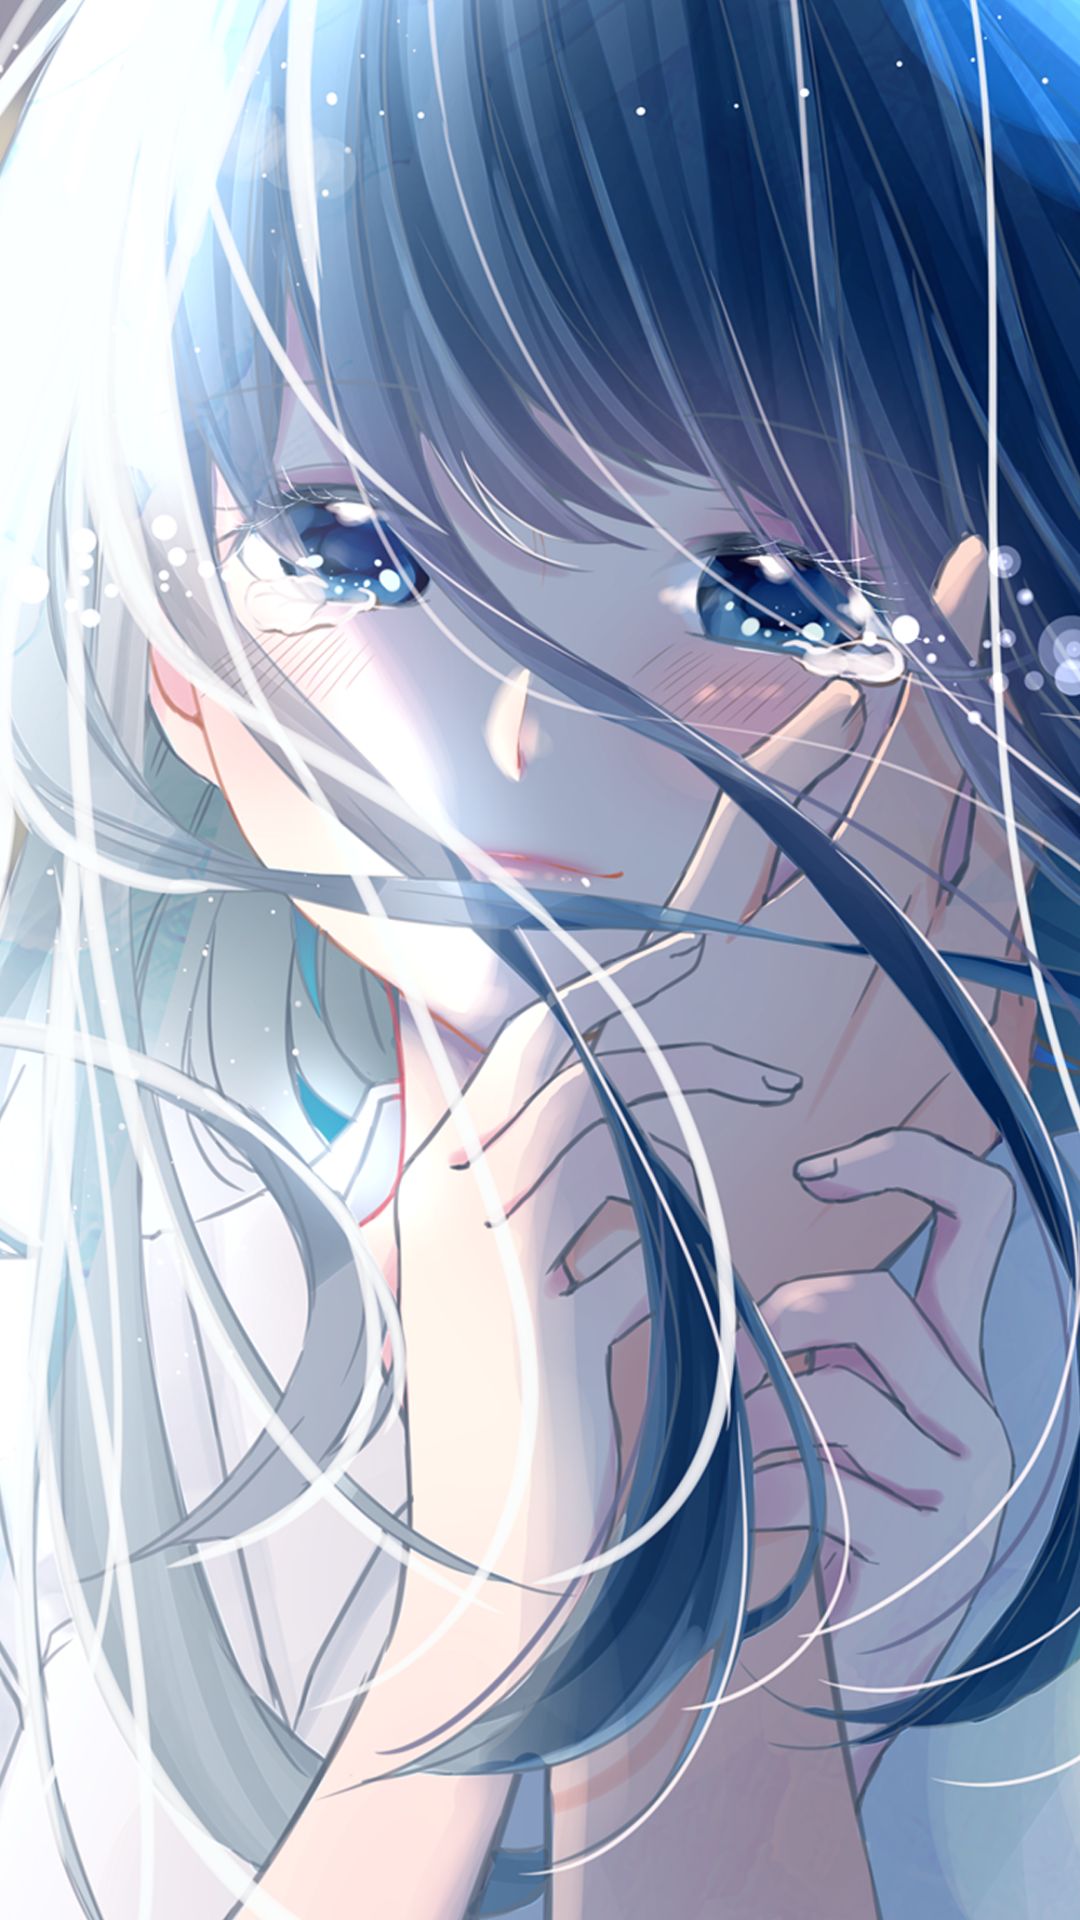 100+] Sad Crying Anime Wallpapers | Wallpapers.com